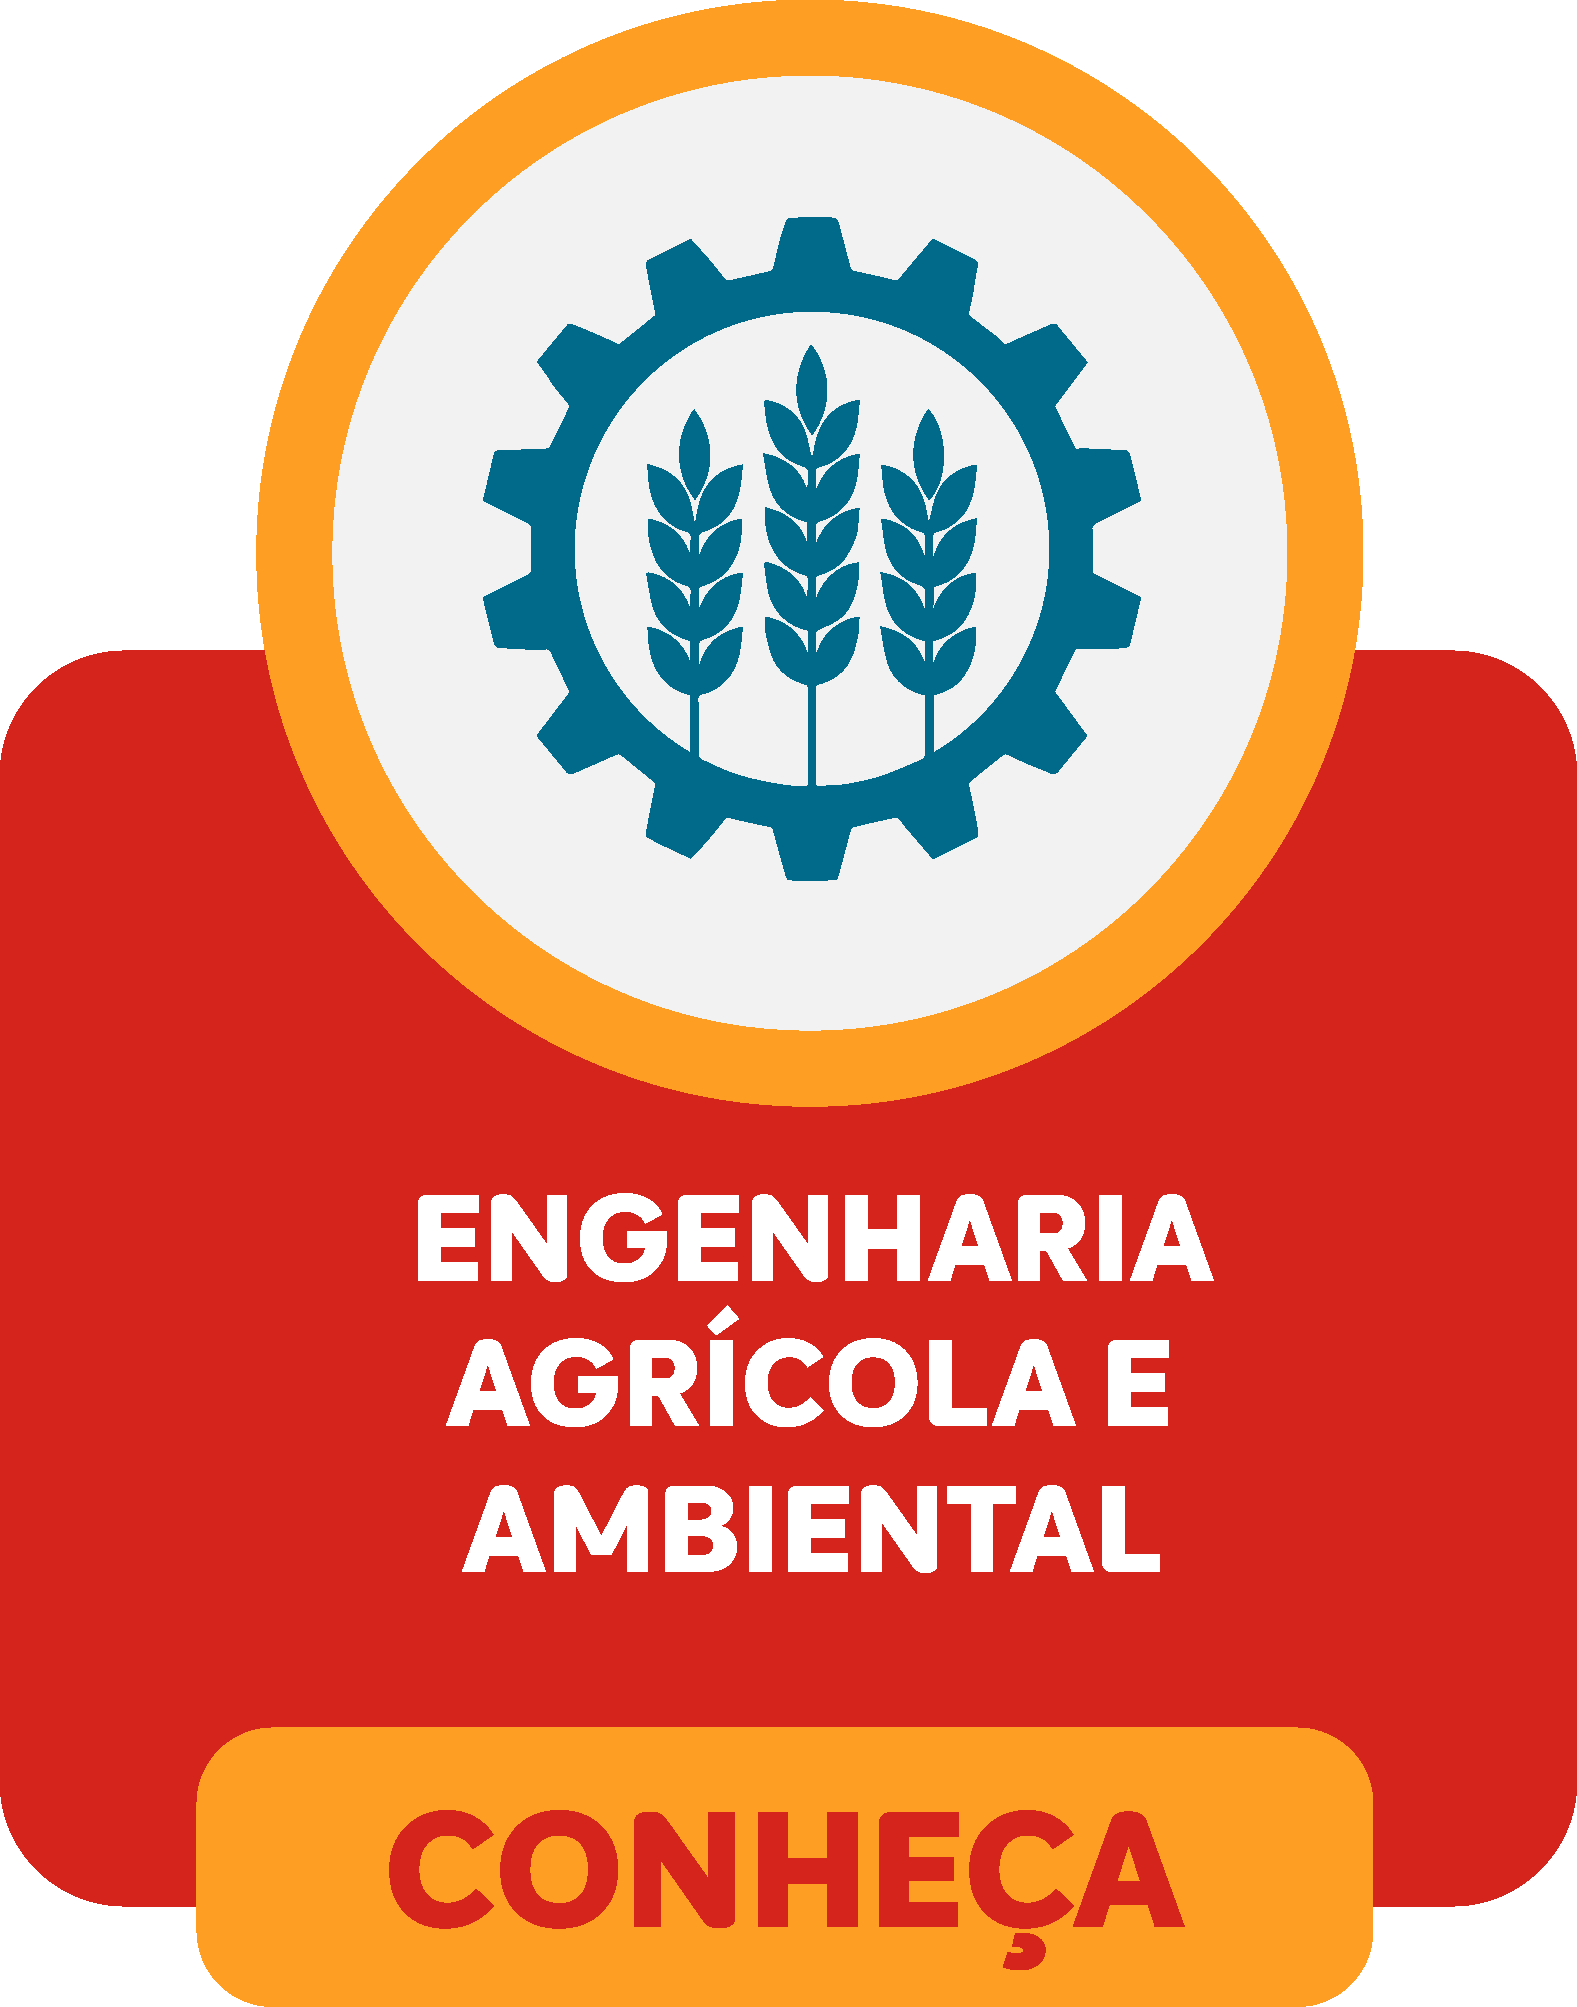 Engenharia Agrícola e Ambiental